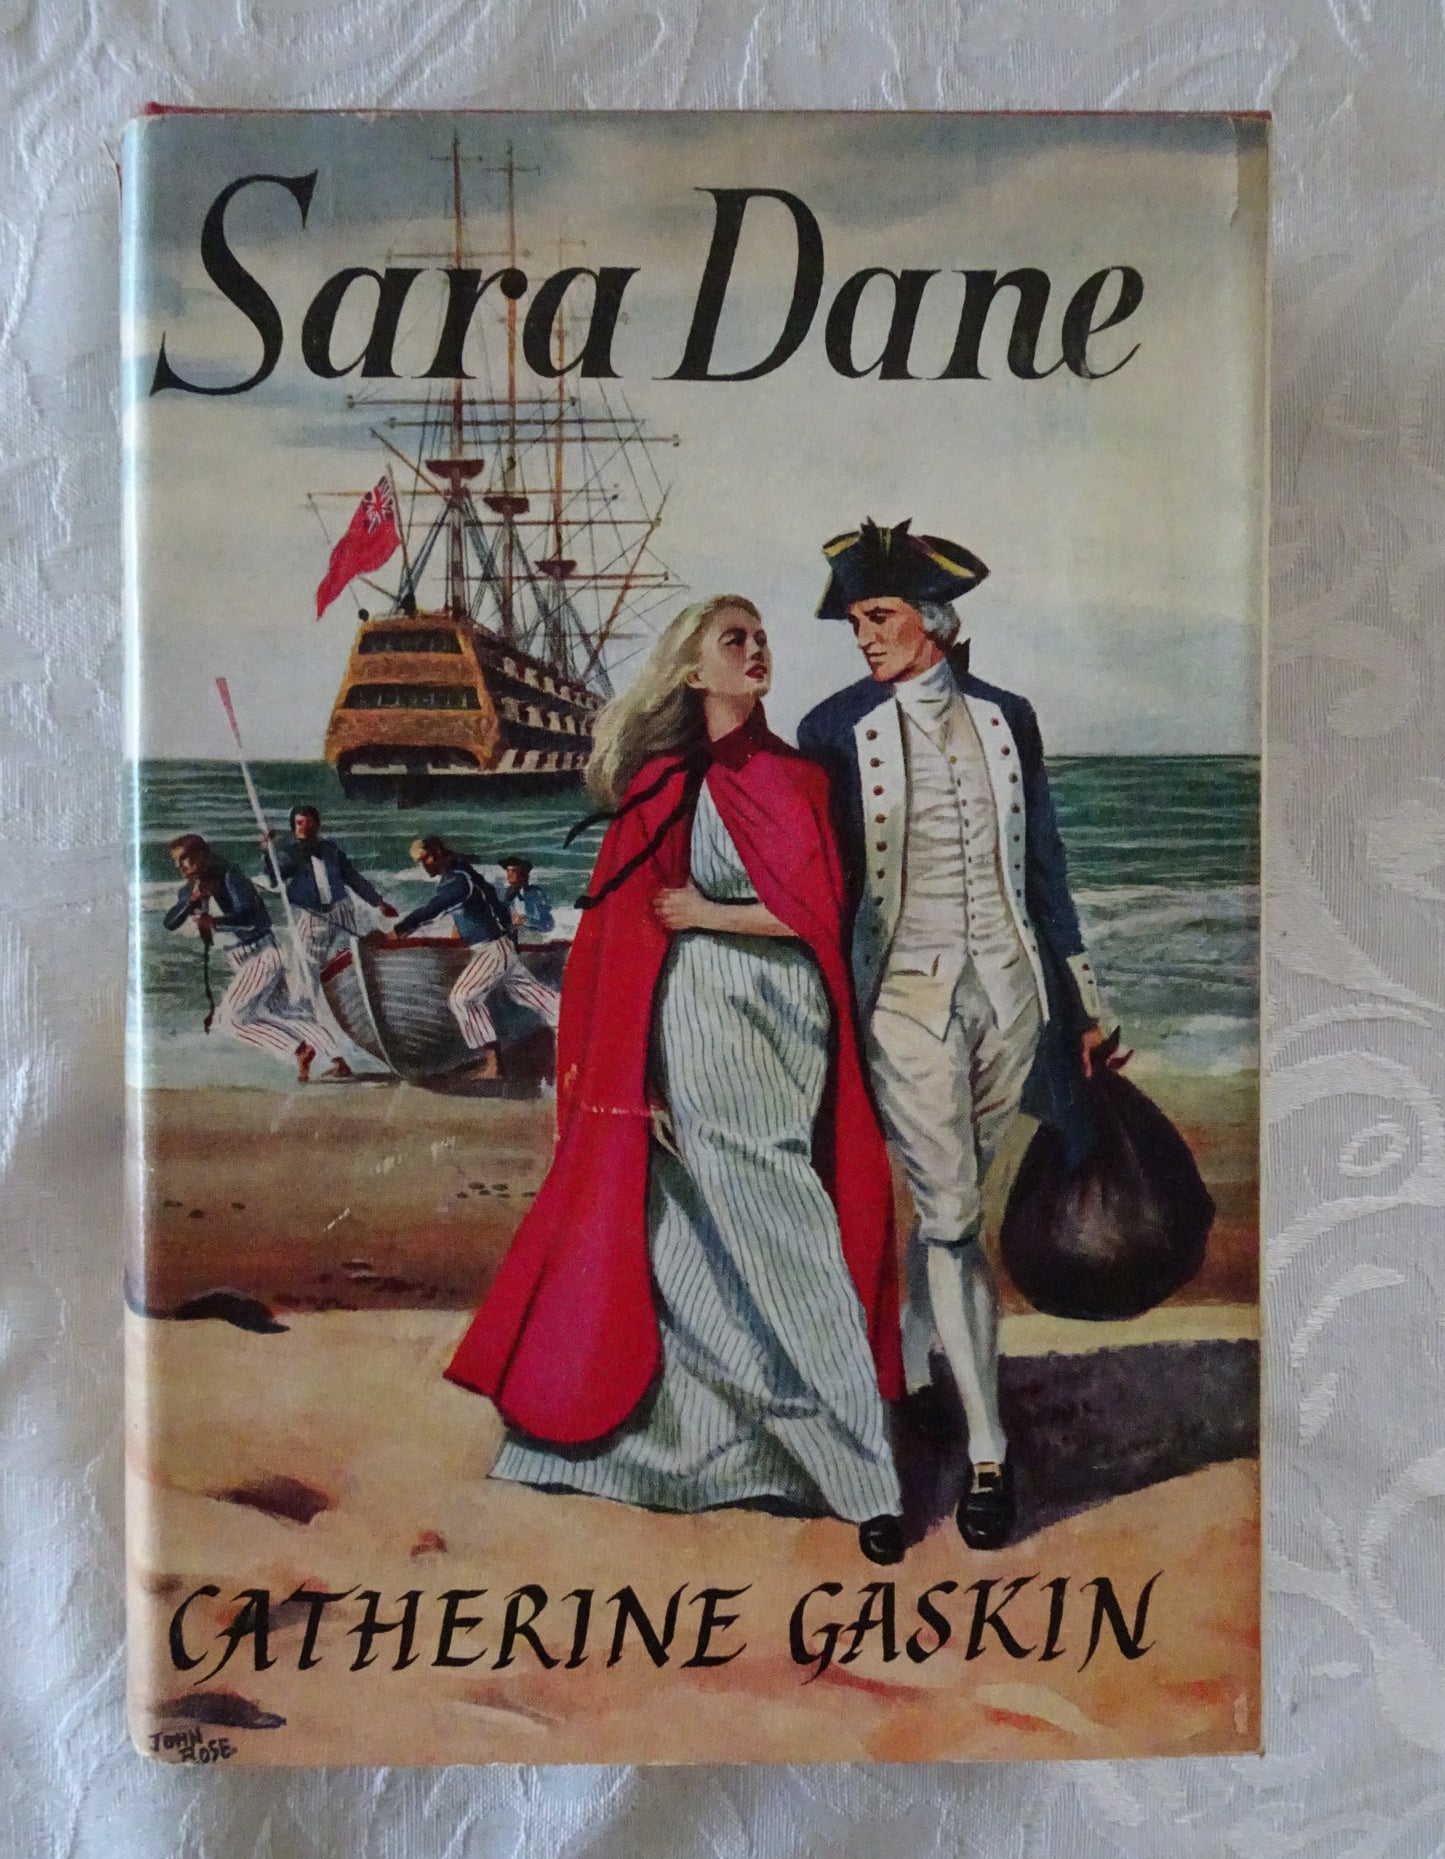 Sara Dane by Catherine Gaskin